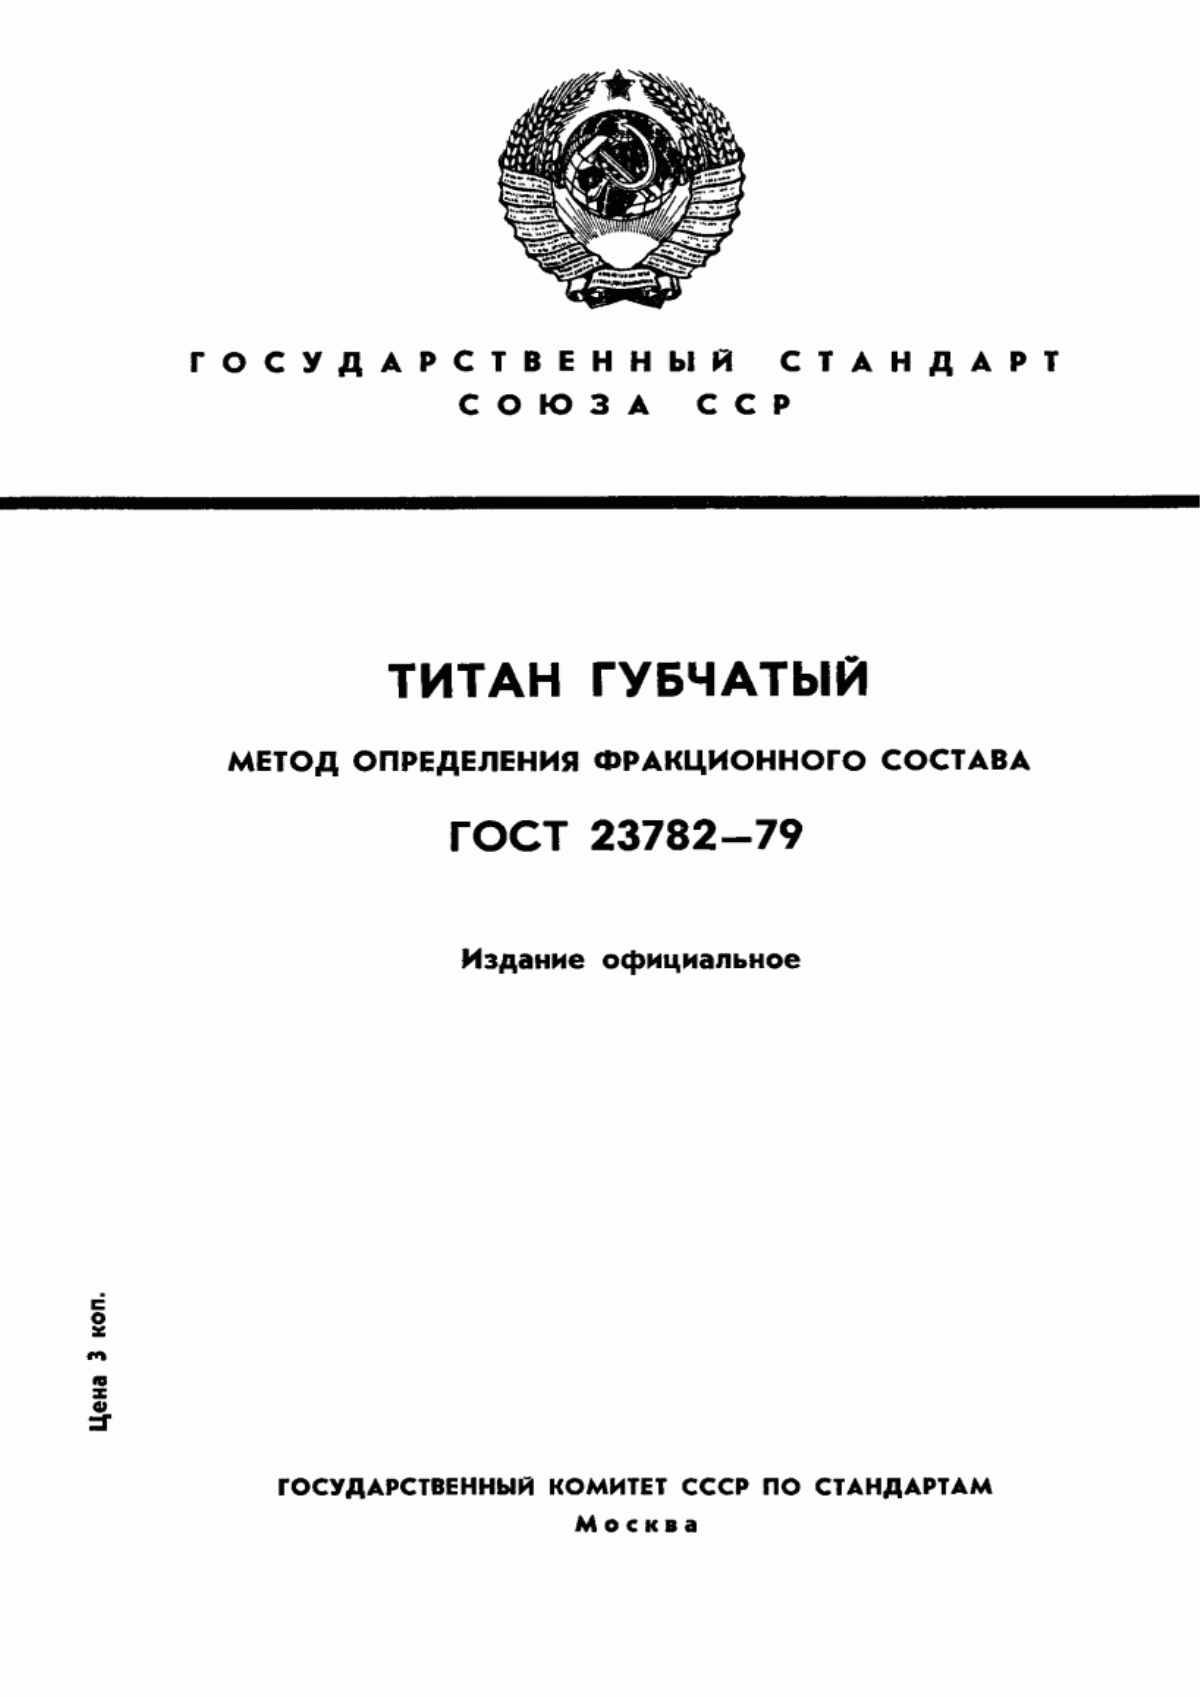 ГОСТ 23782-79 Титан губчатый. Метод определения фракционного состава